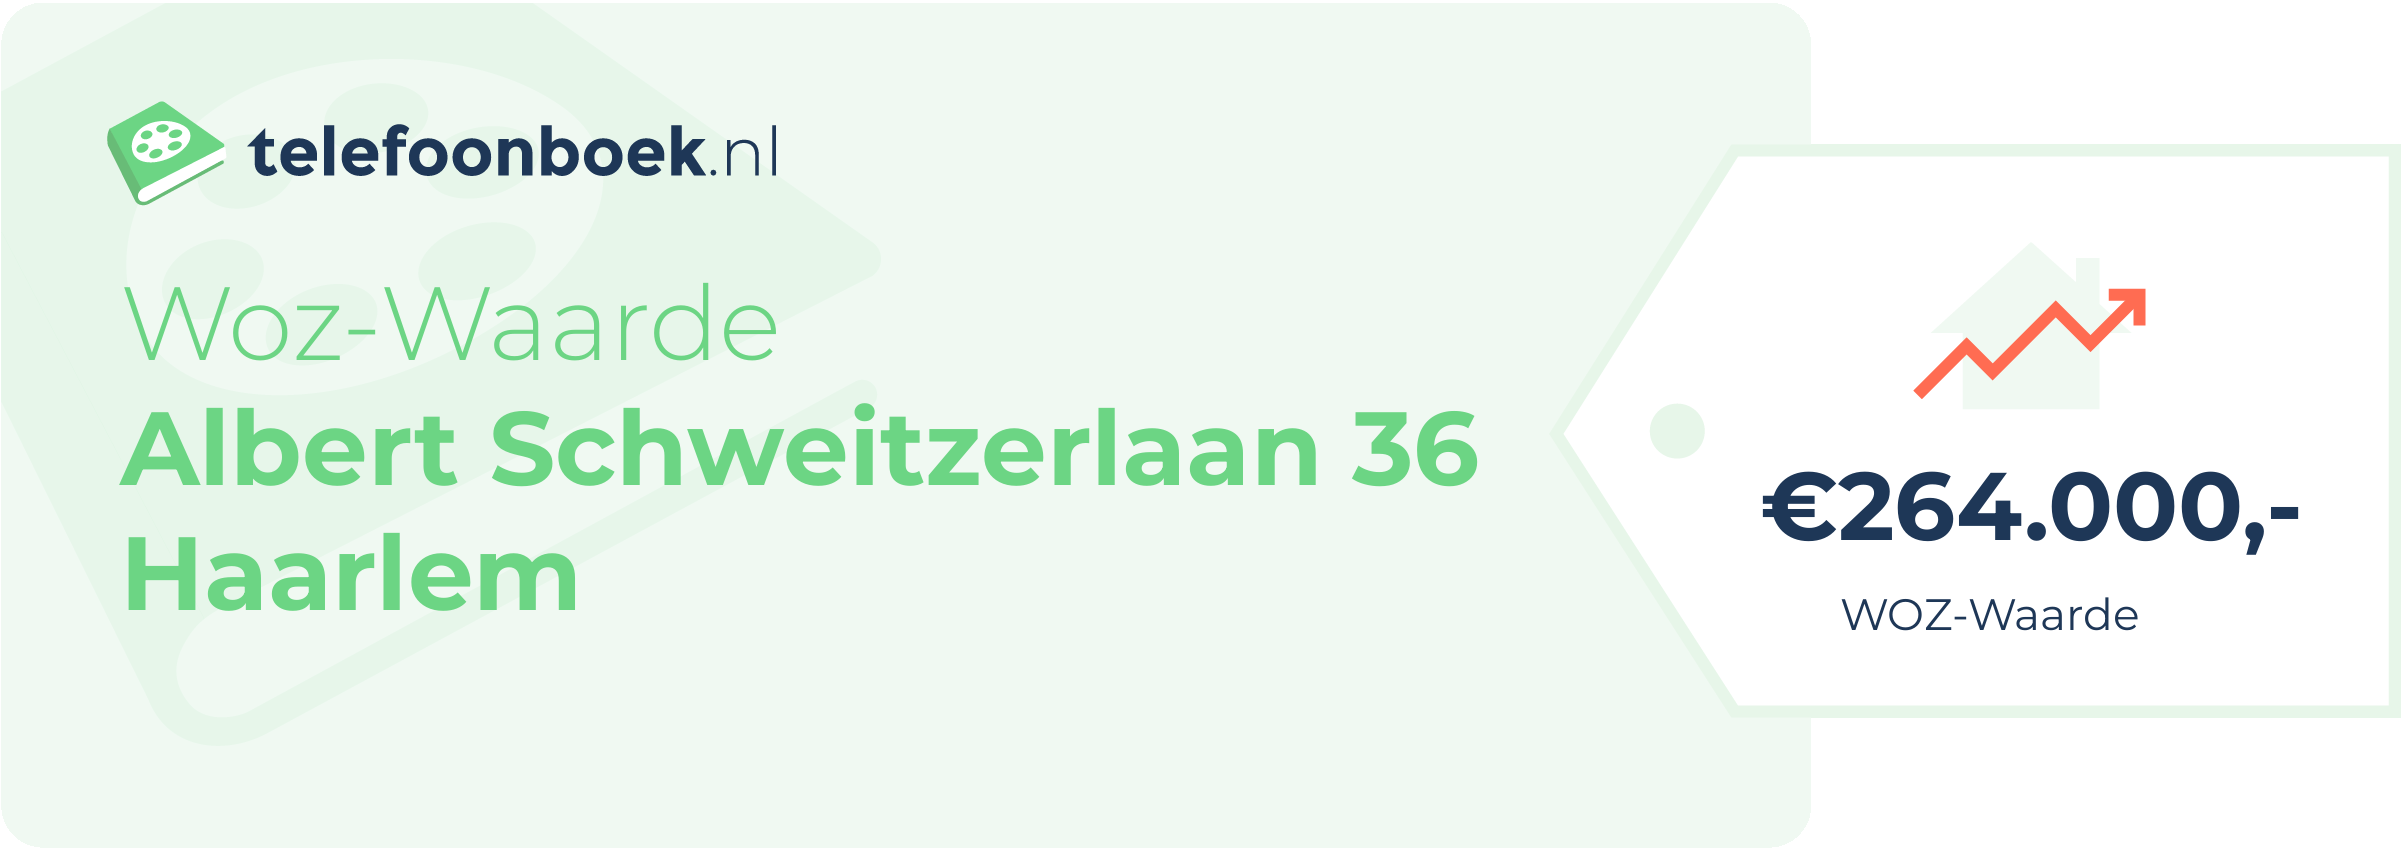 WOZ-waarde Albert Schweitzerlaan 36 Haarlem